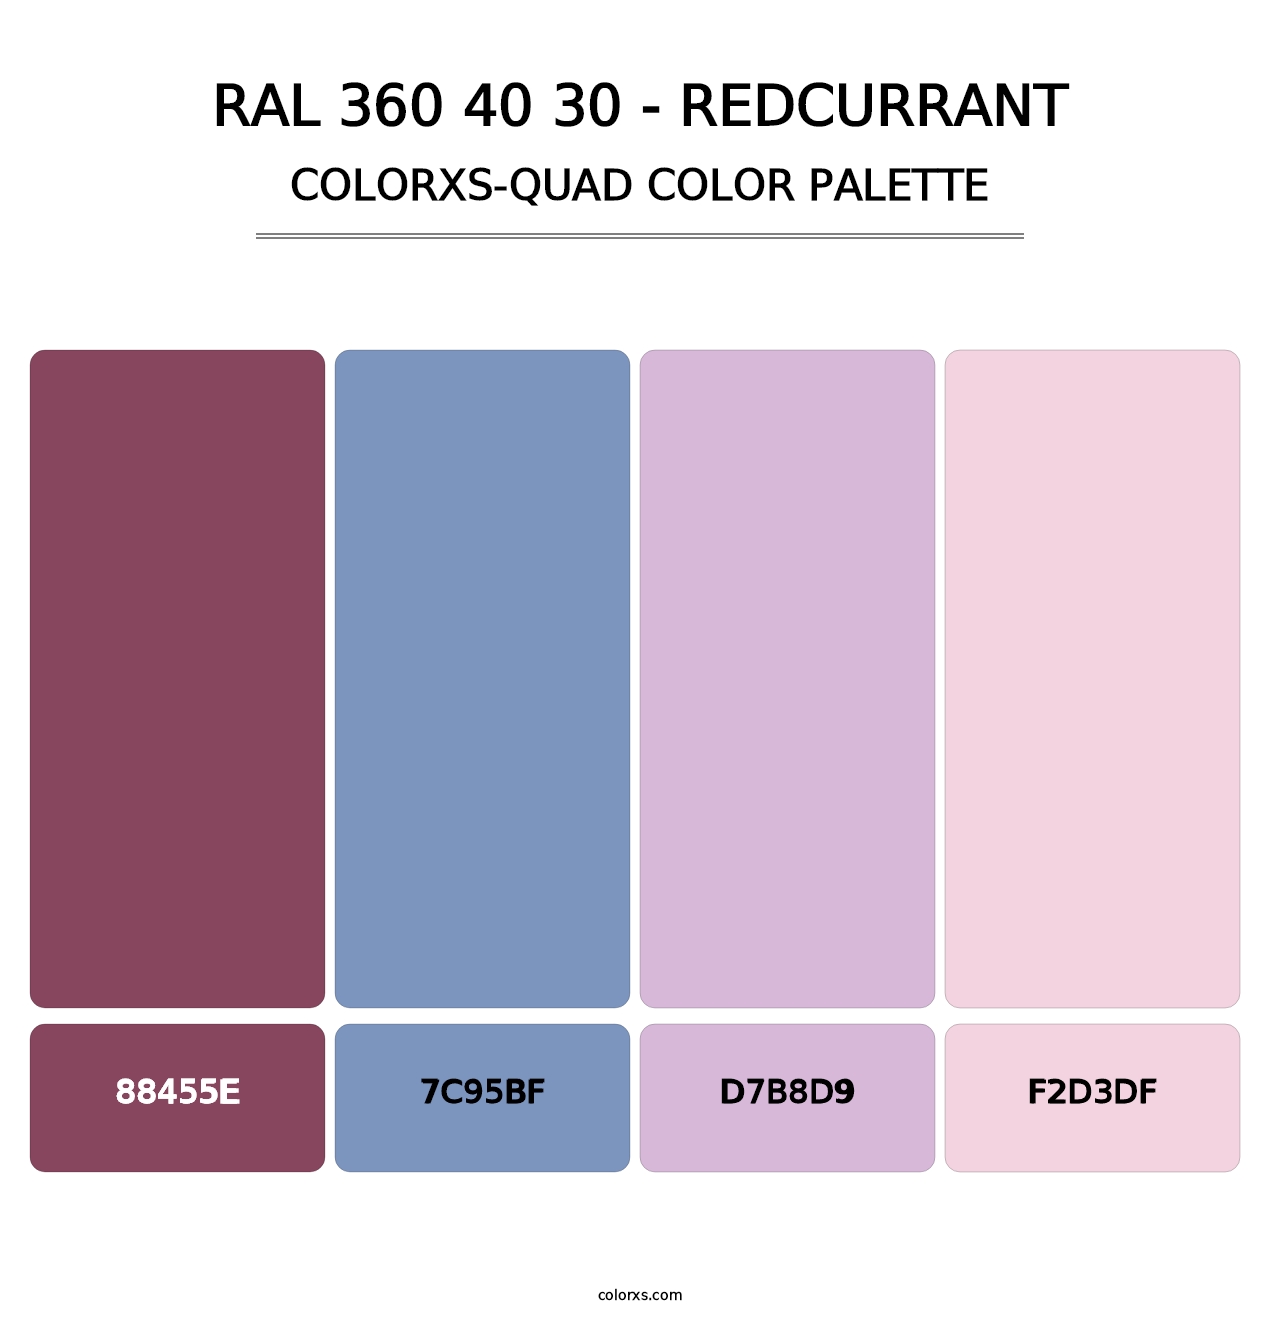 RAL 360 40 30 - Redcurrant - Colorxs Quad Palette